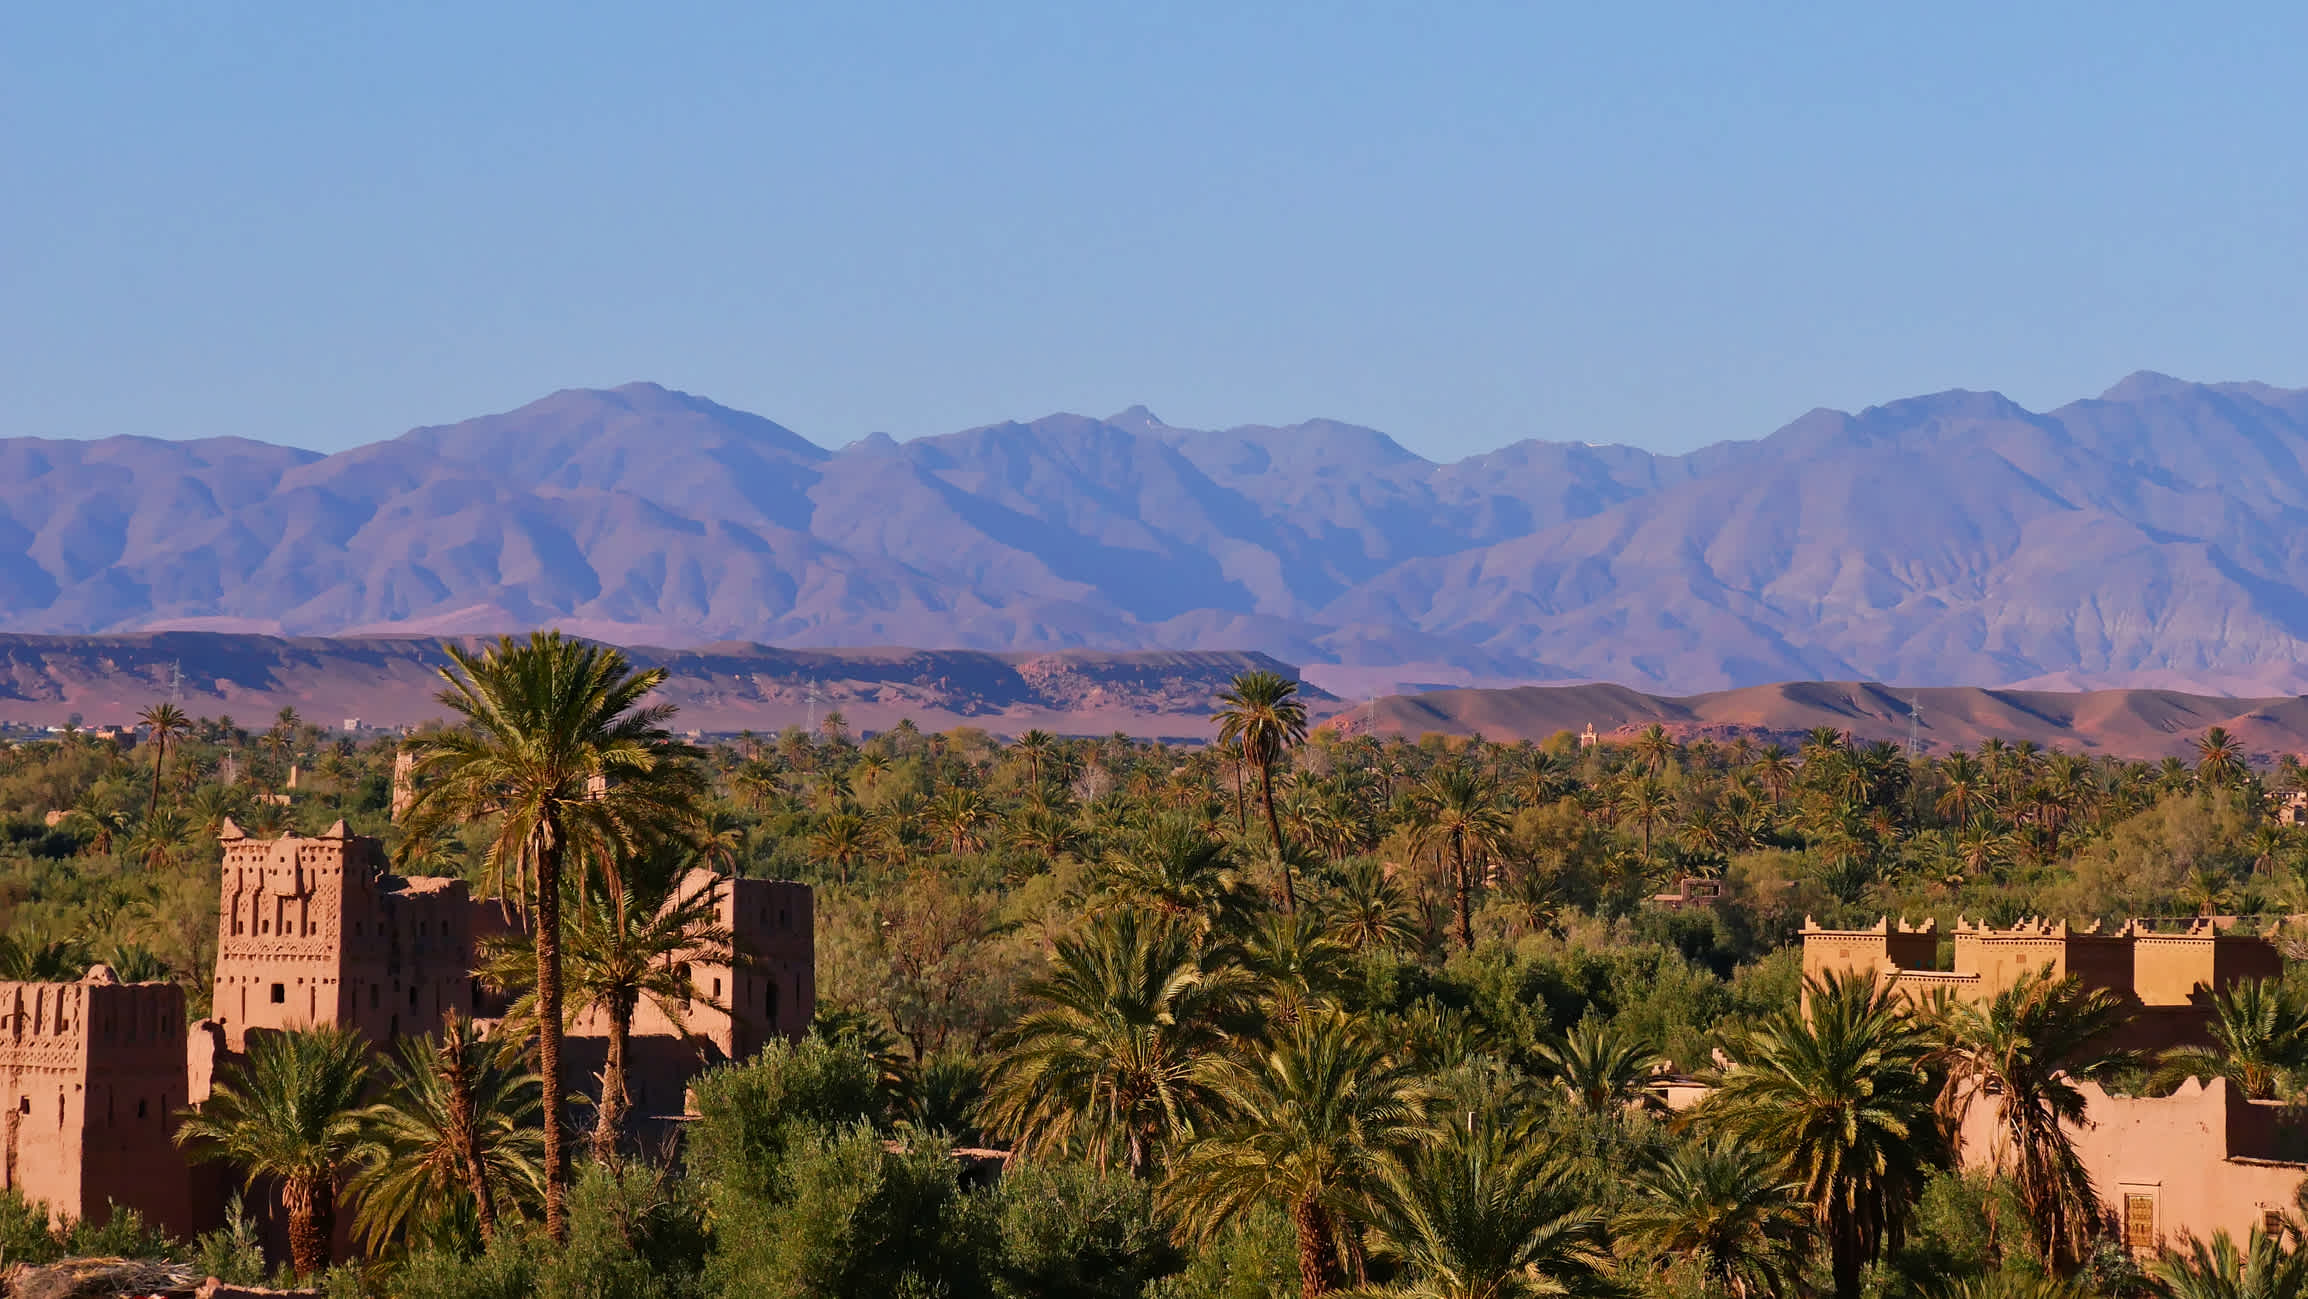 Panoramablick auf eine grüne Oase mit historischen Gebäuden in einem südlichen Atlasgebirge in Marokko